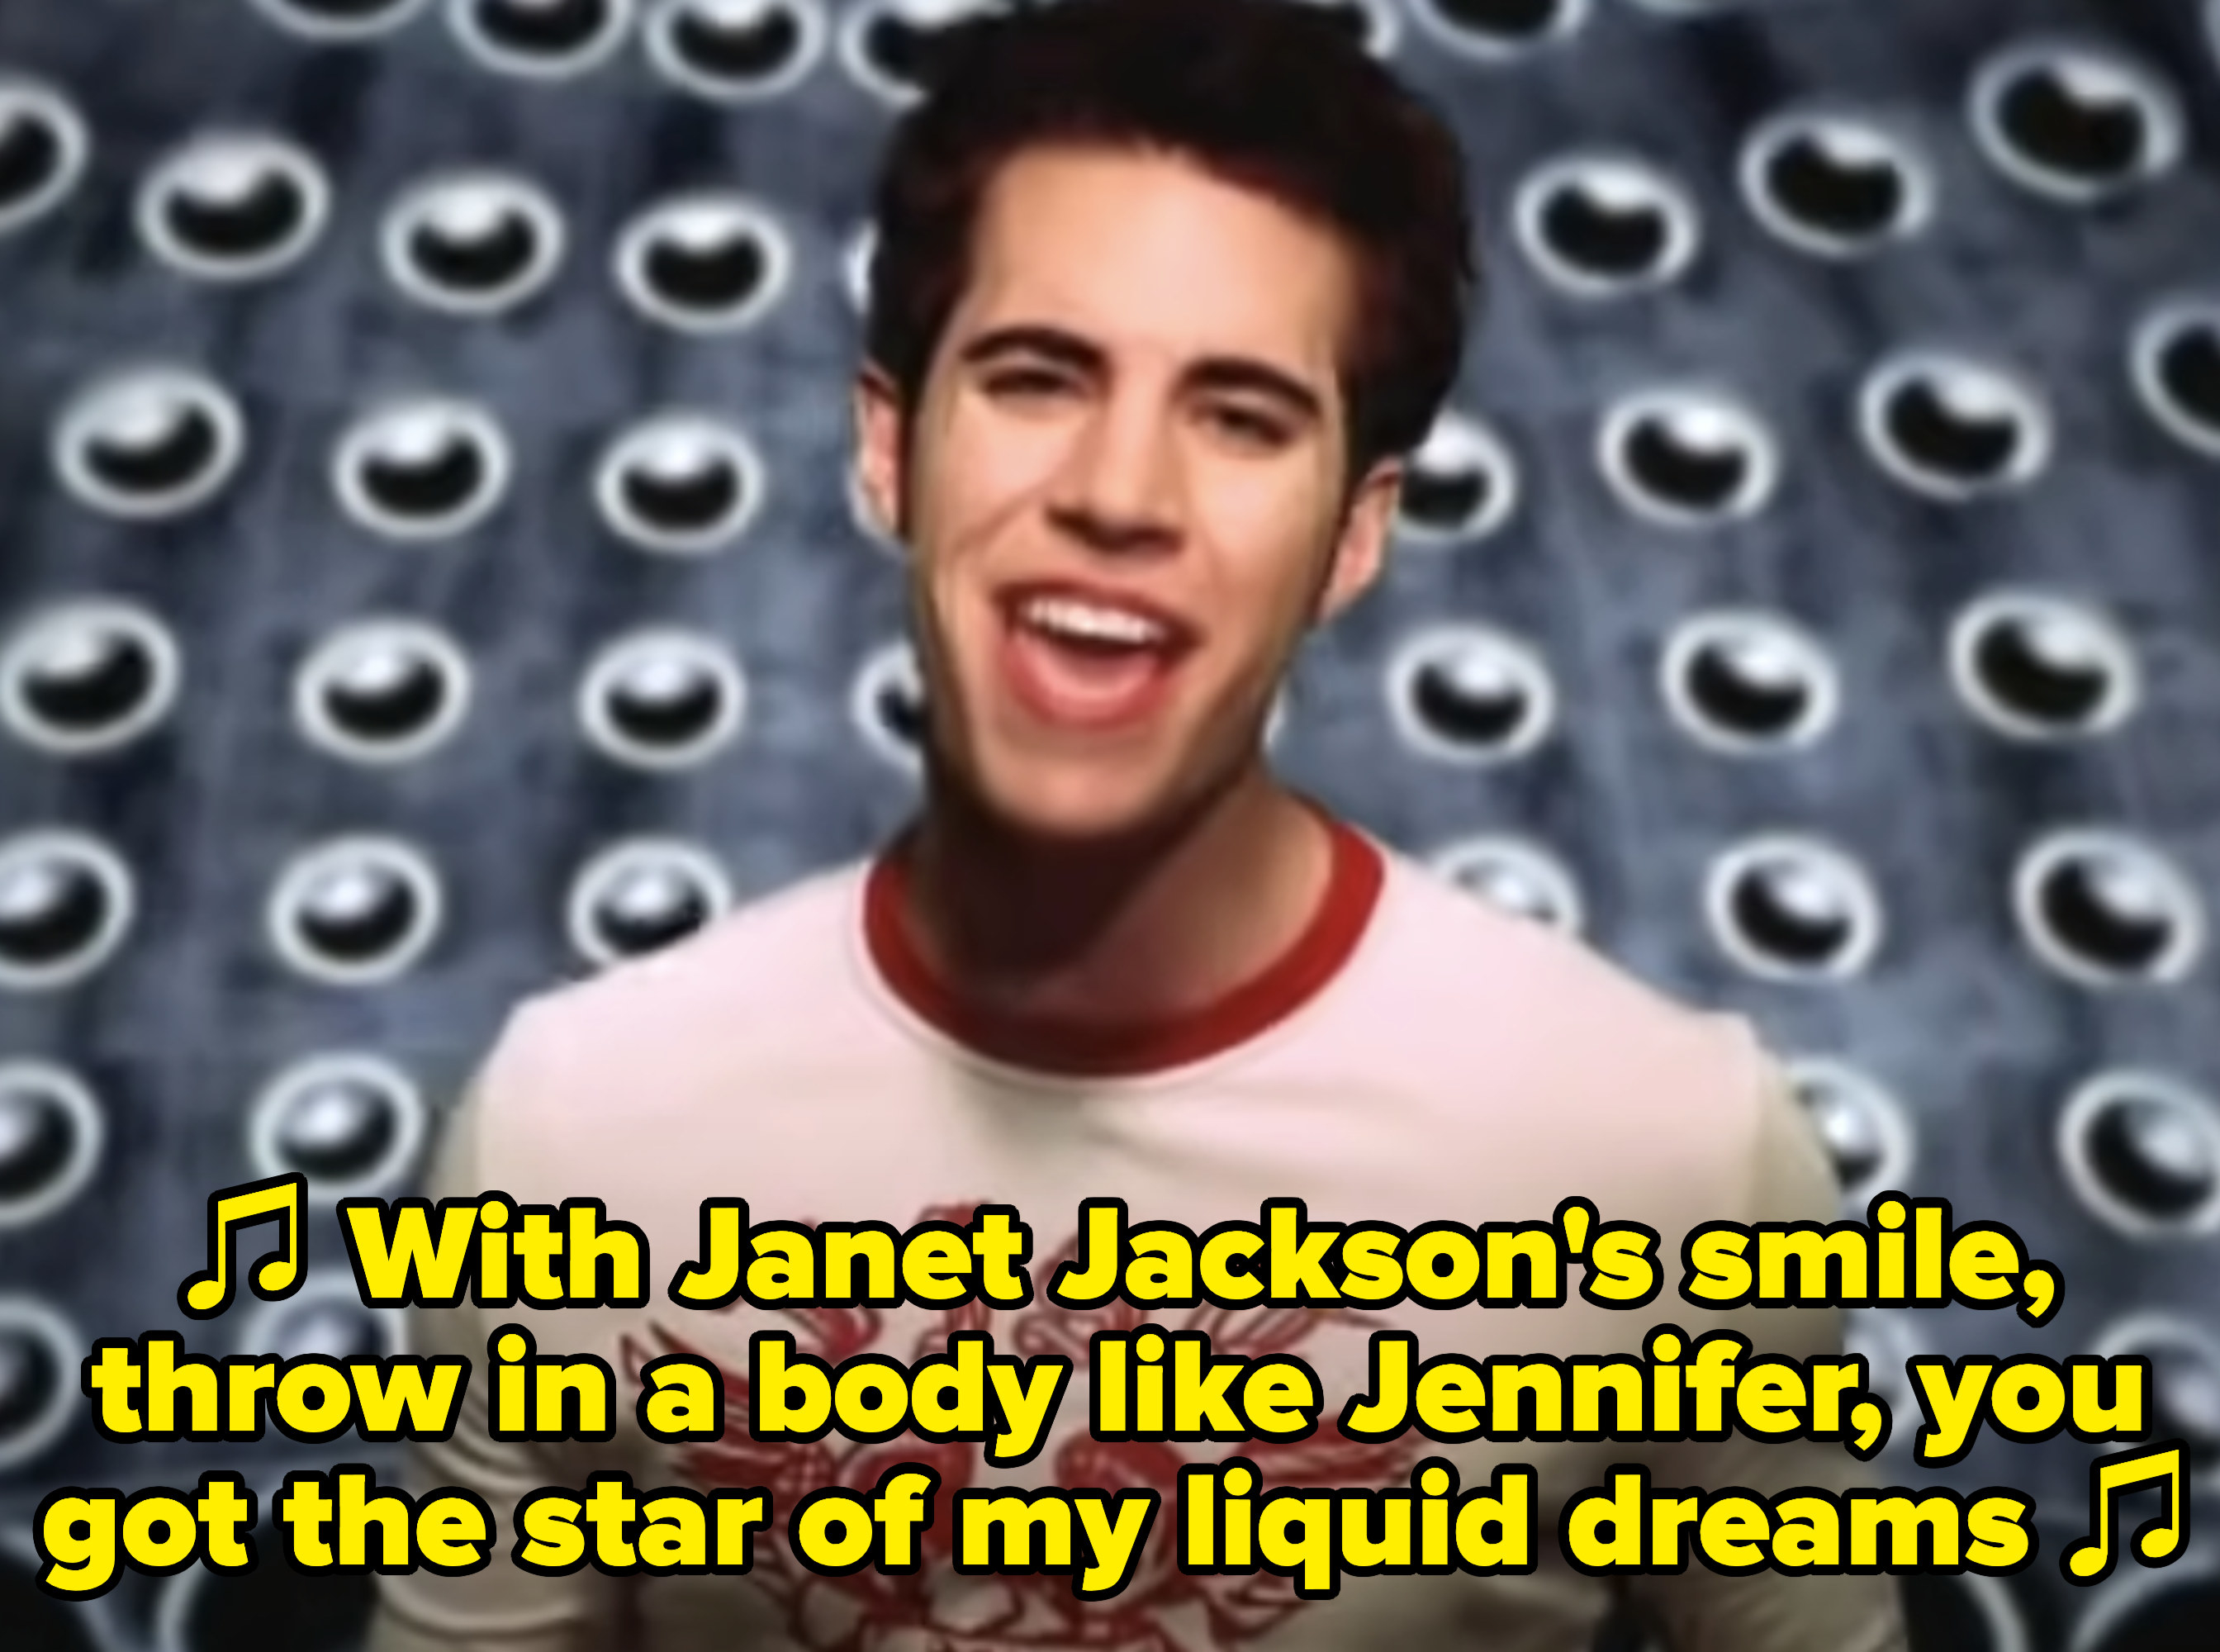 2你唱歌:“珍妮特·杰克逊# x27;微笑,扔在一个身体像珍妮弗,你的明星我的液体dreams"